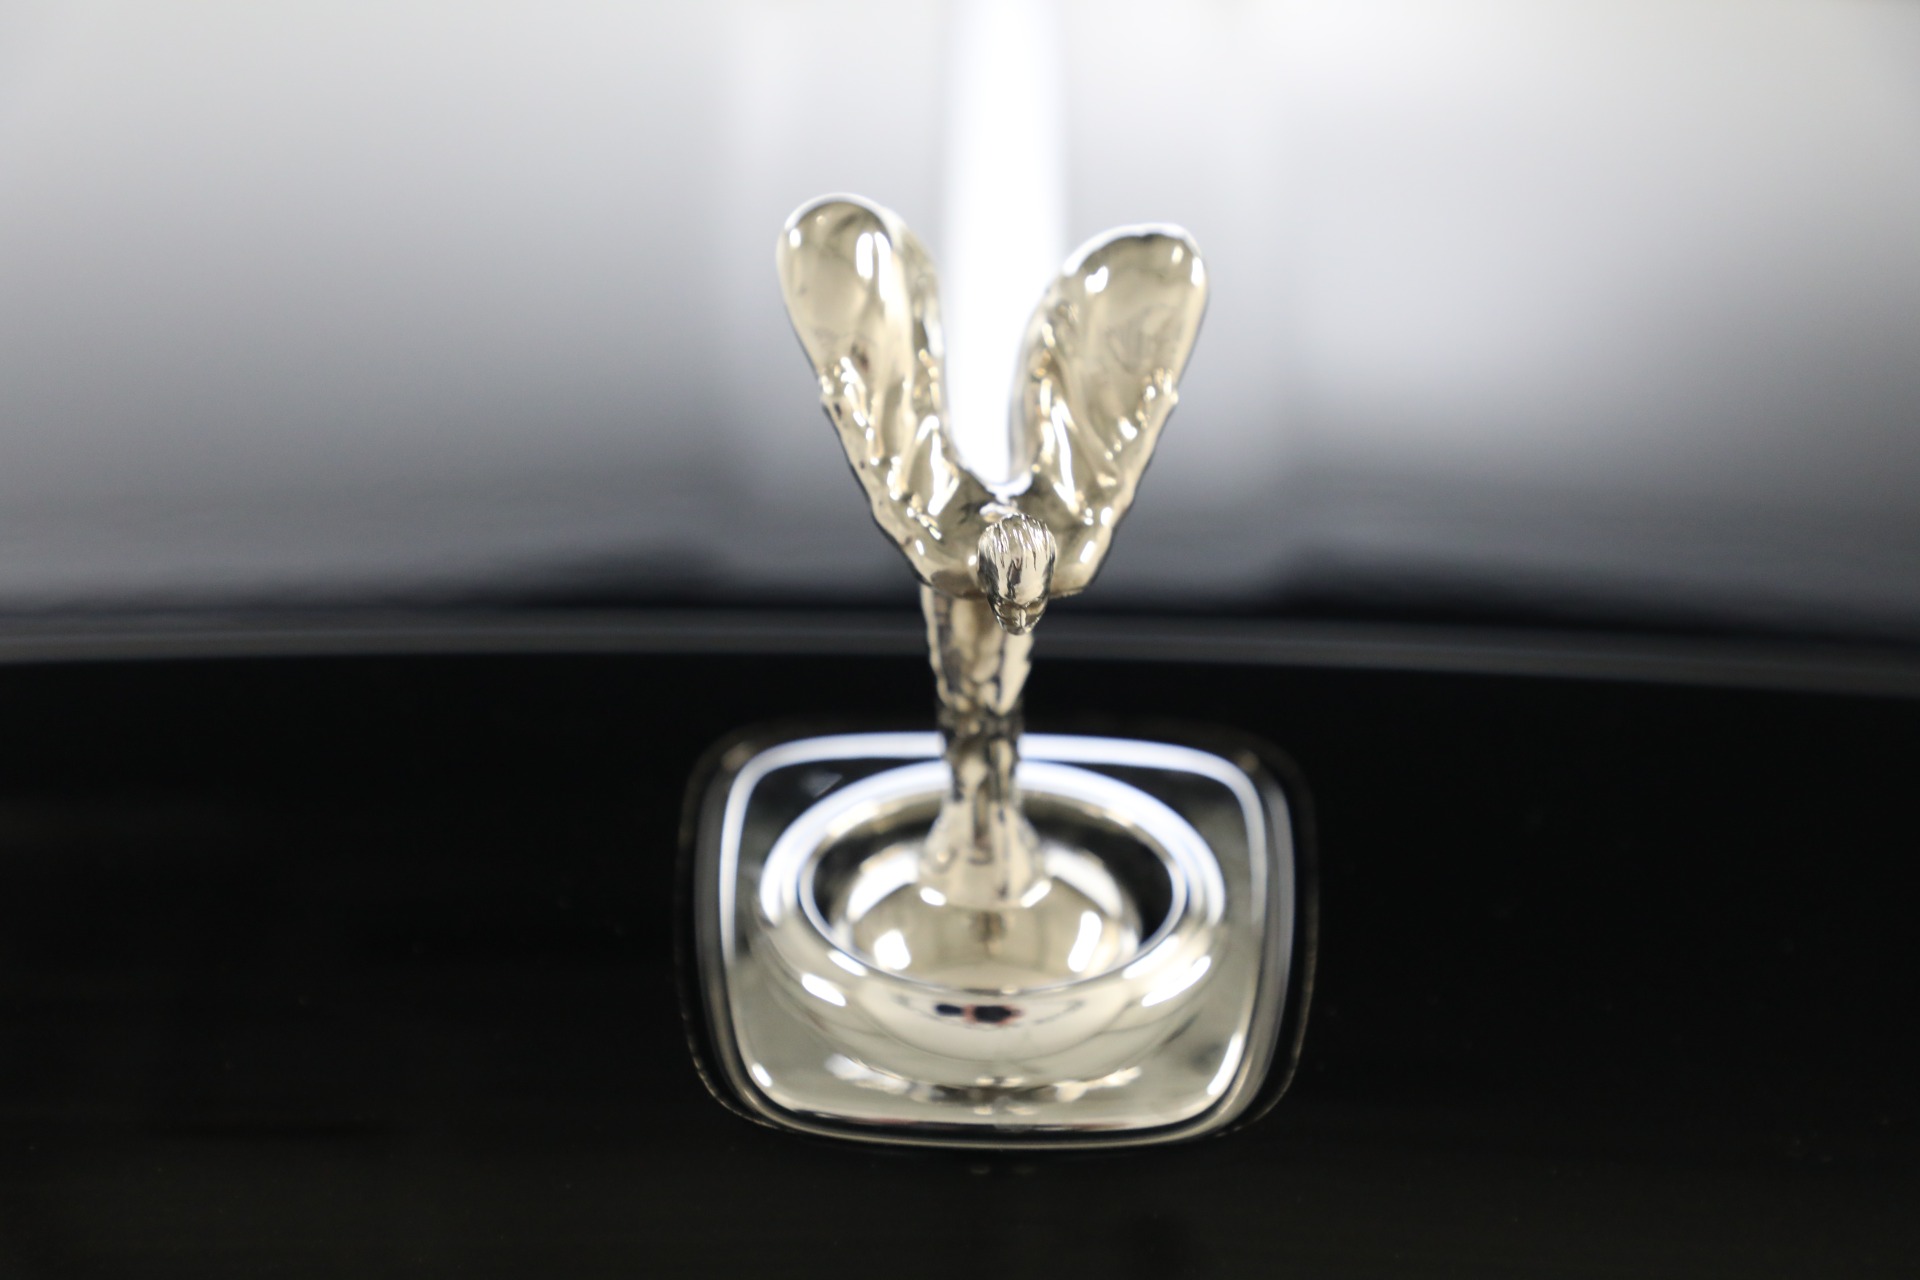 Used 2016 Rolls Royce Ghost Series II